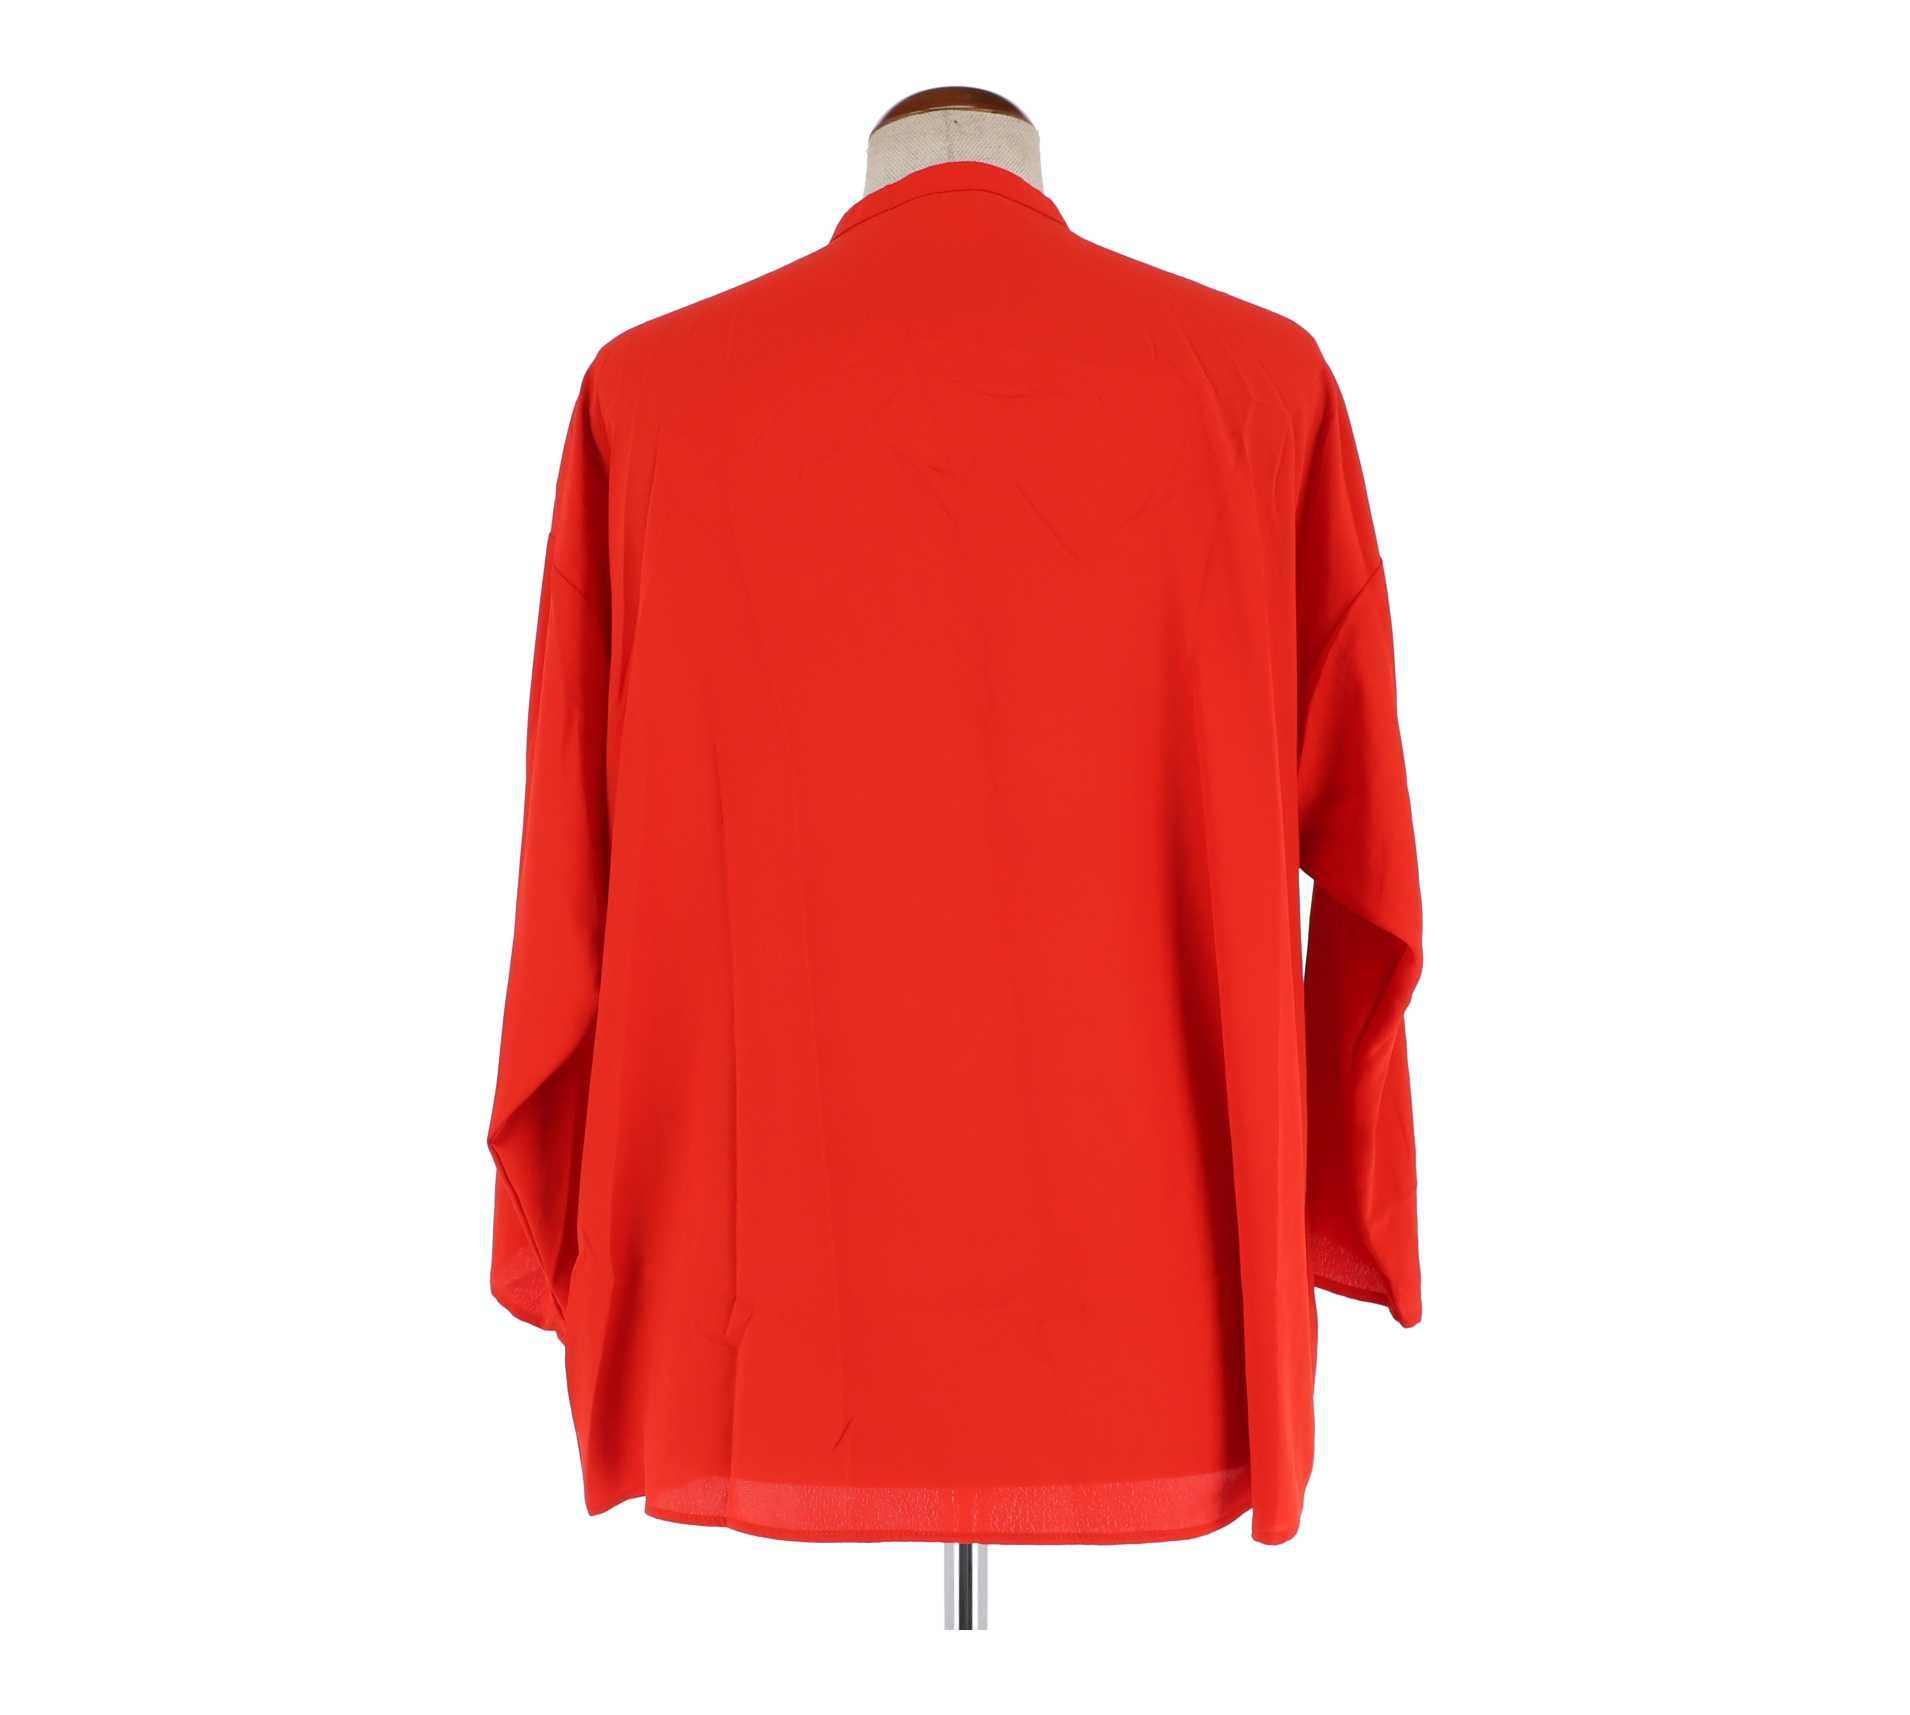 Czerwona koszula marki H&M, rozmiar 46